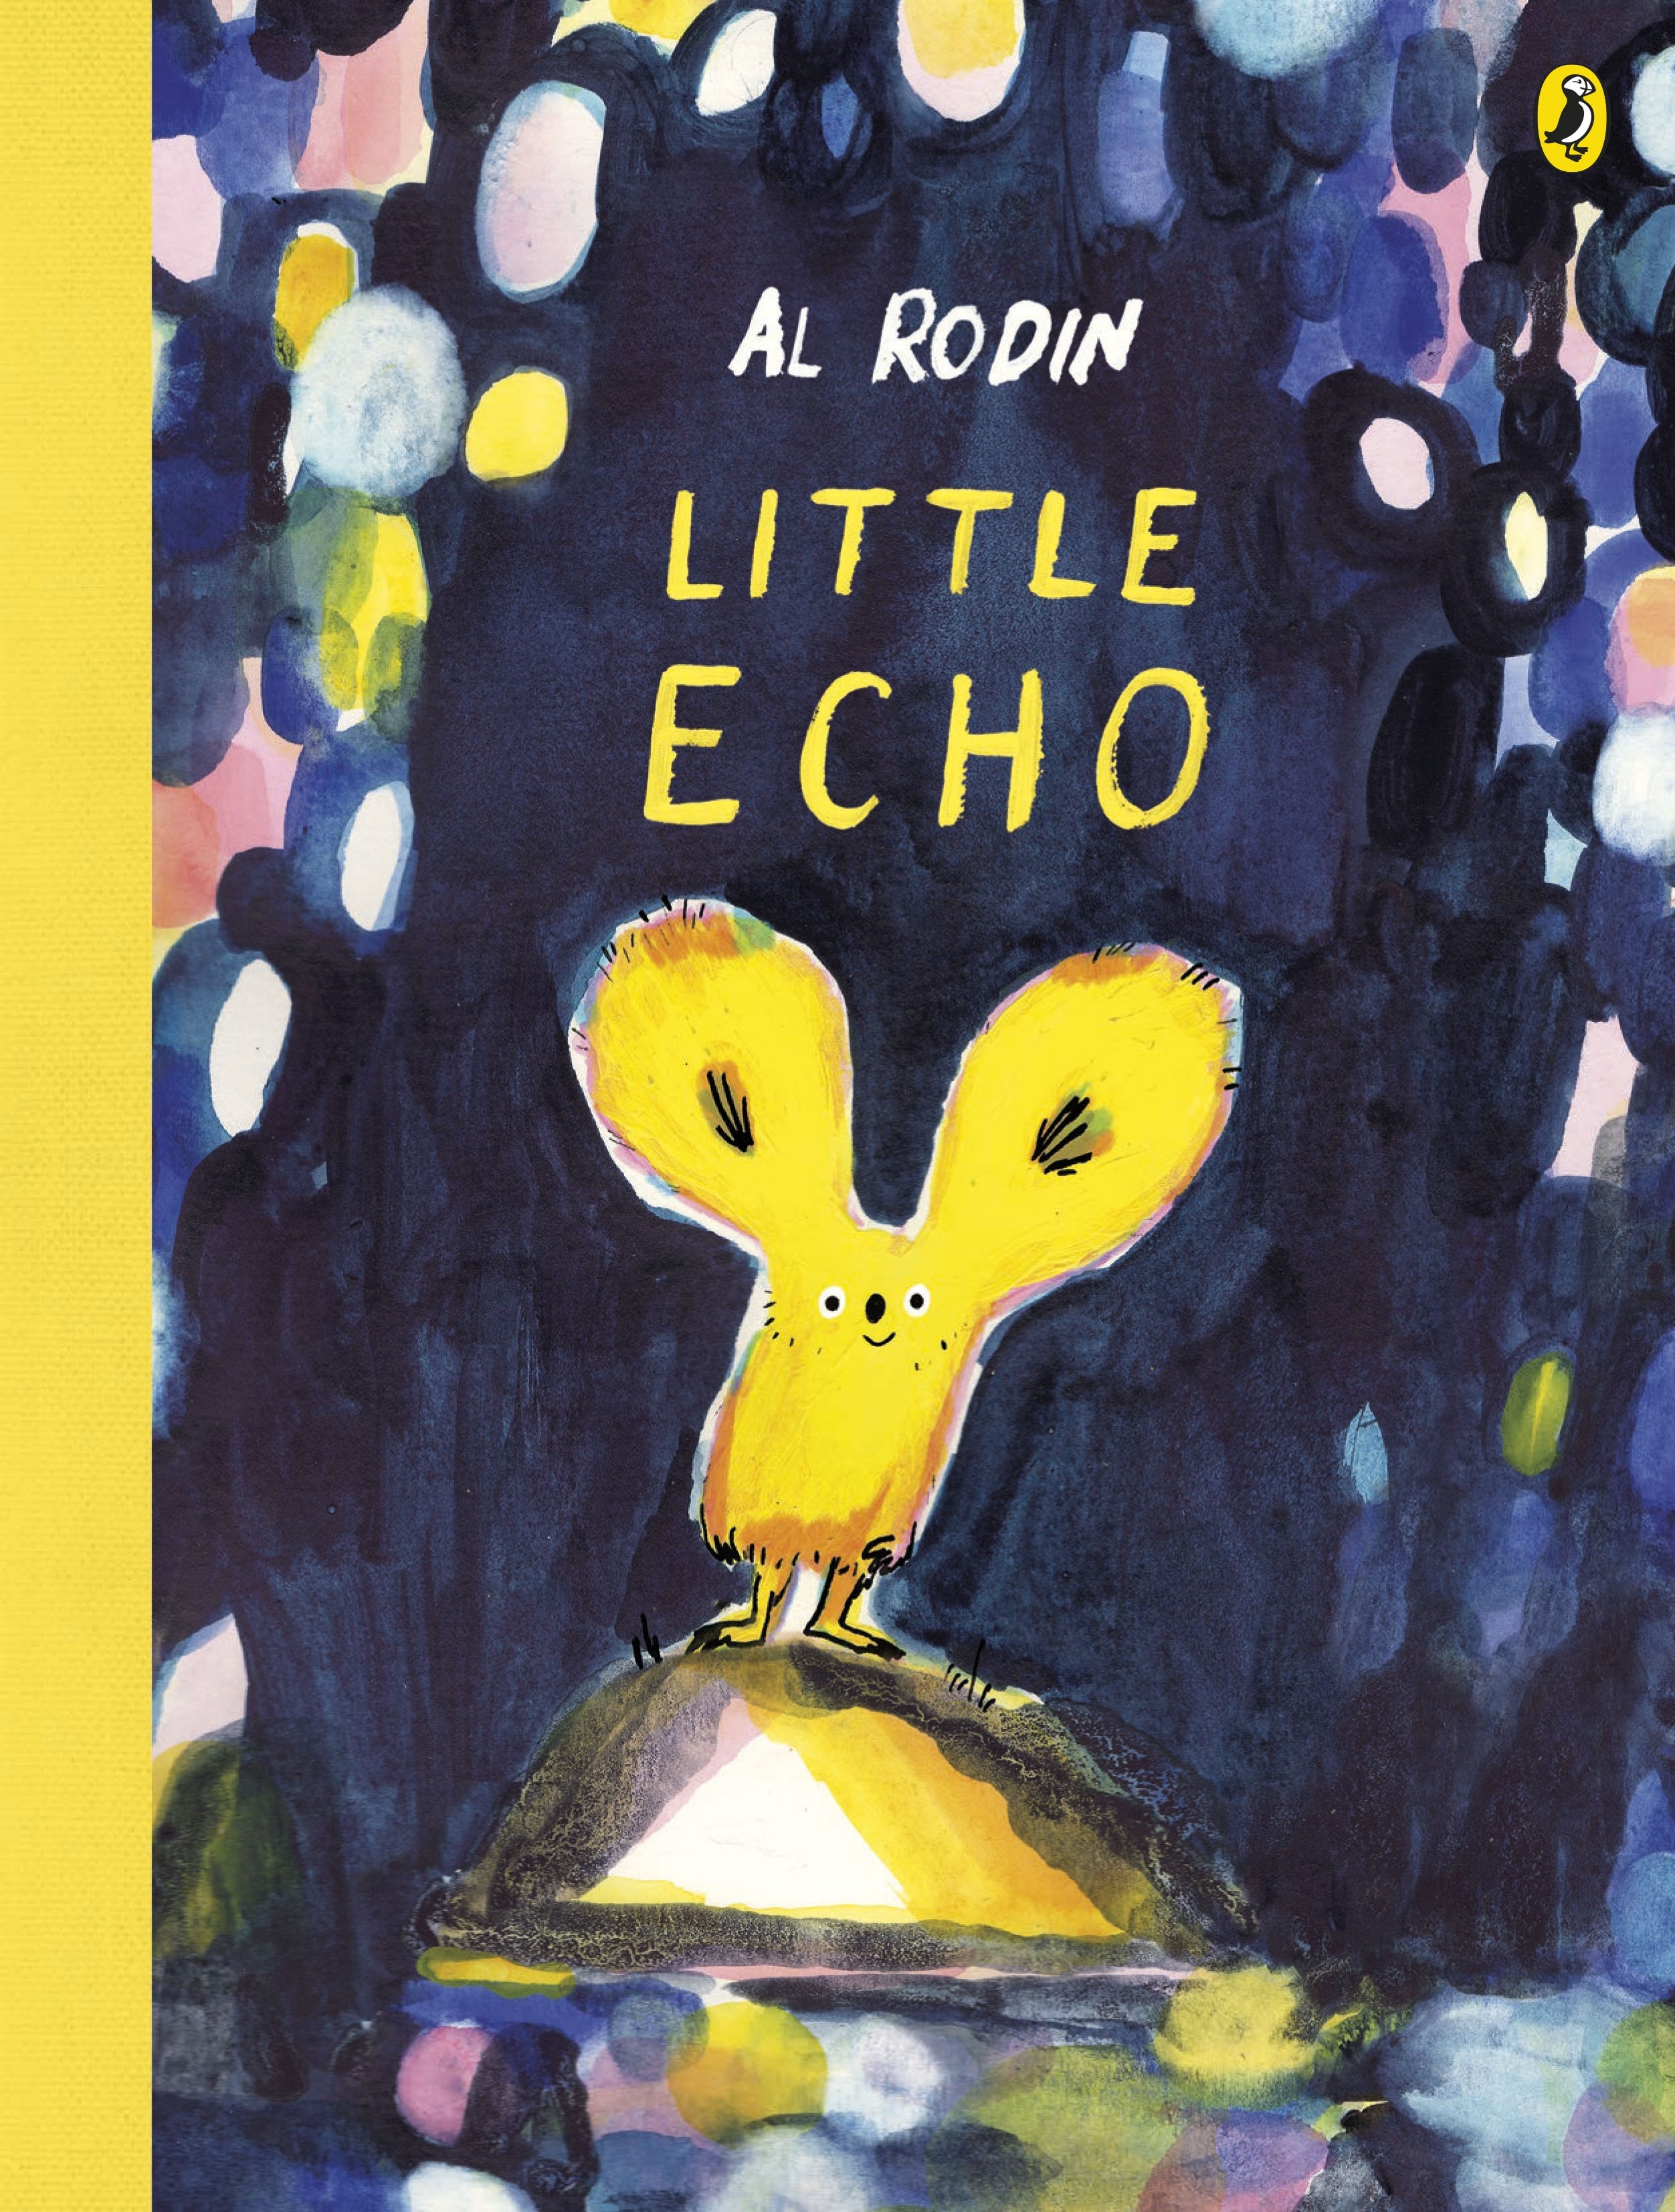 Book “Little Echo” by Al Rodin — July 7, 2022